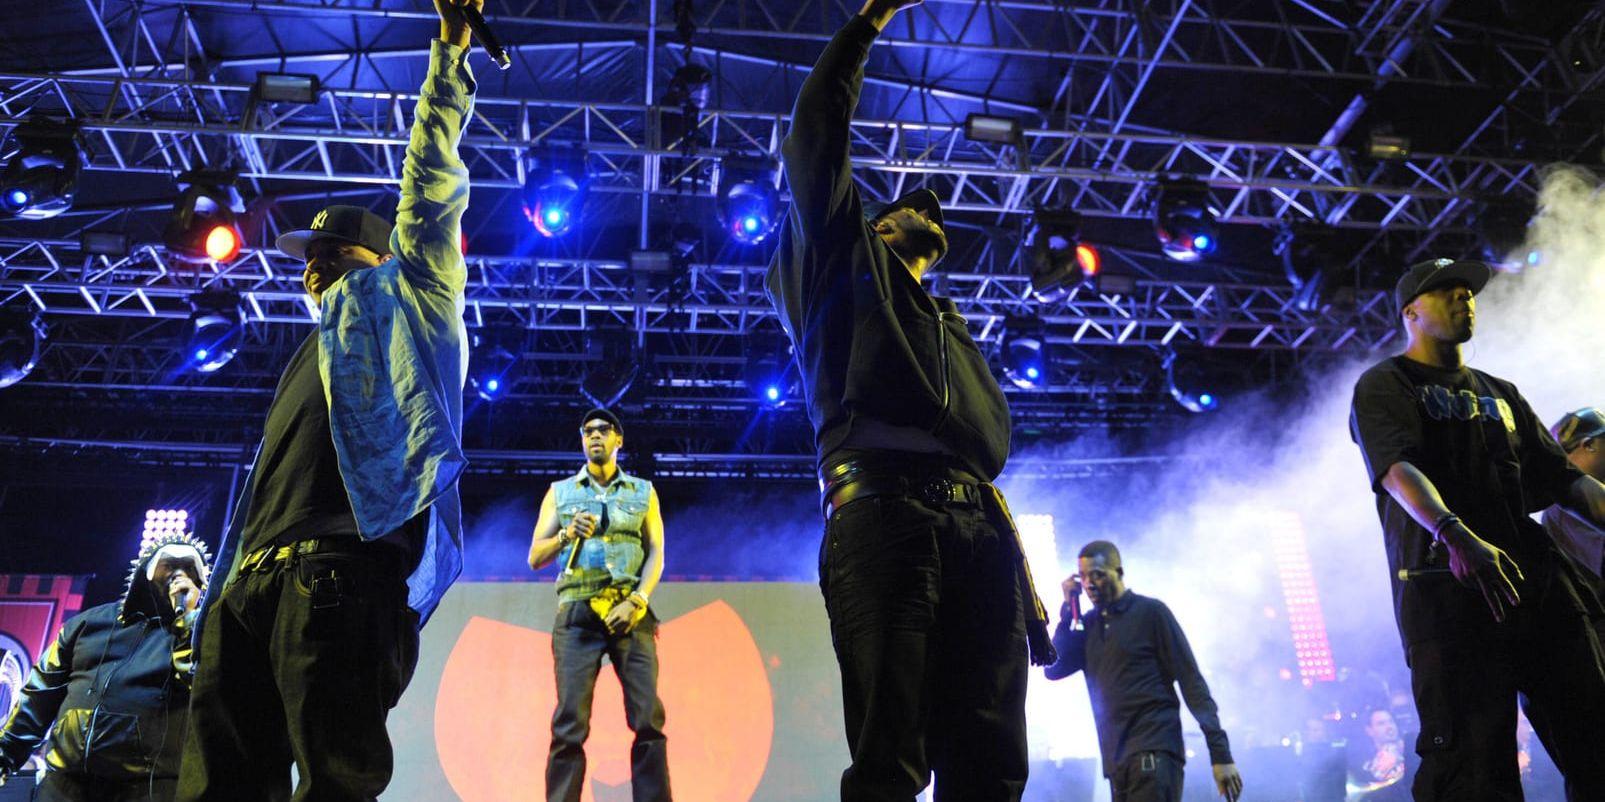 Hiphop-gruppen Wu-Tang Clan återvänder till Roskildefestivalen efter 15 år. Arkivbild.